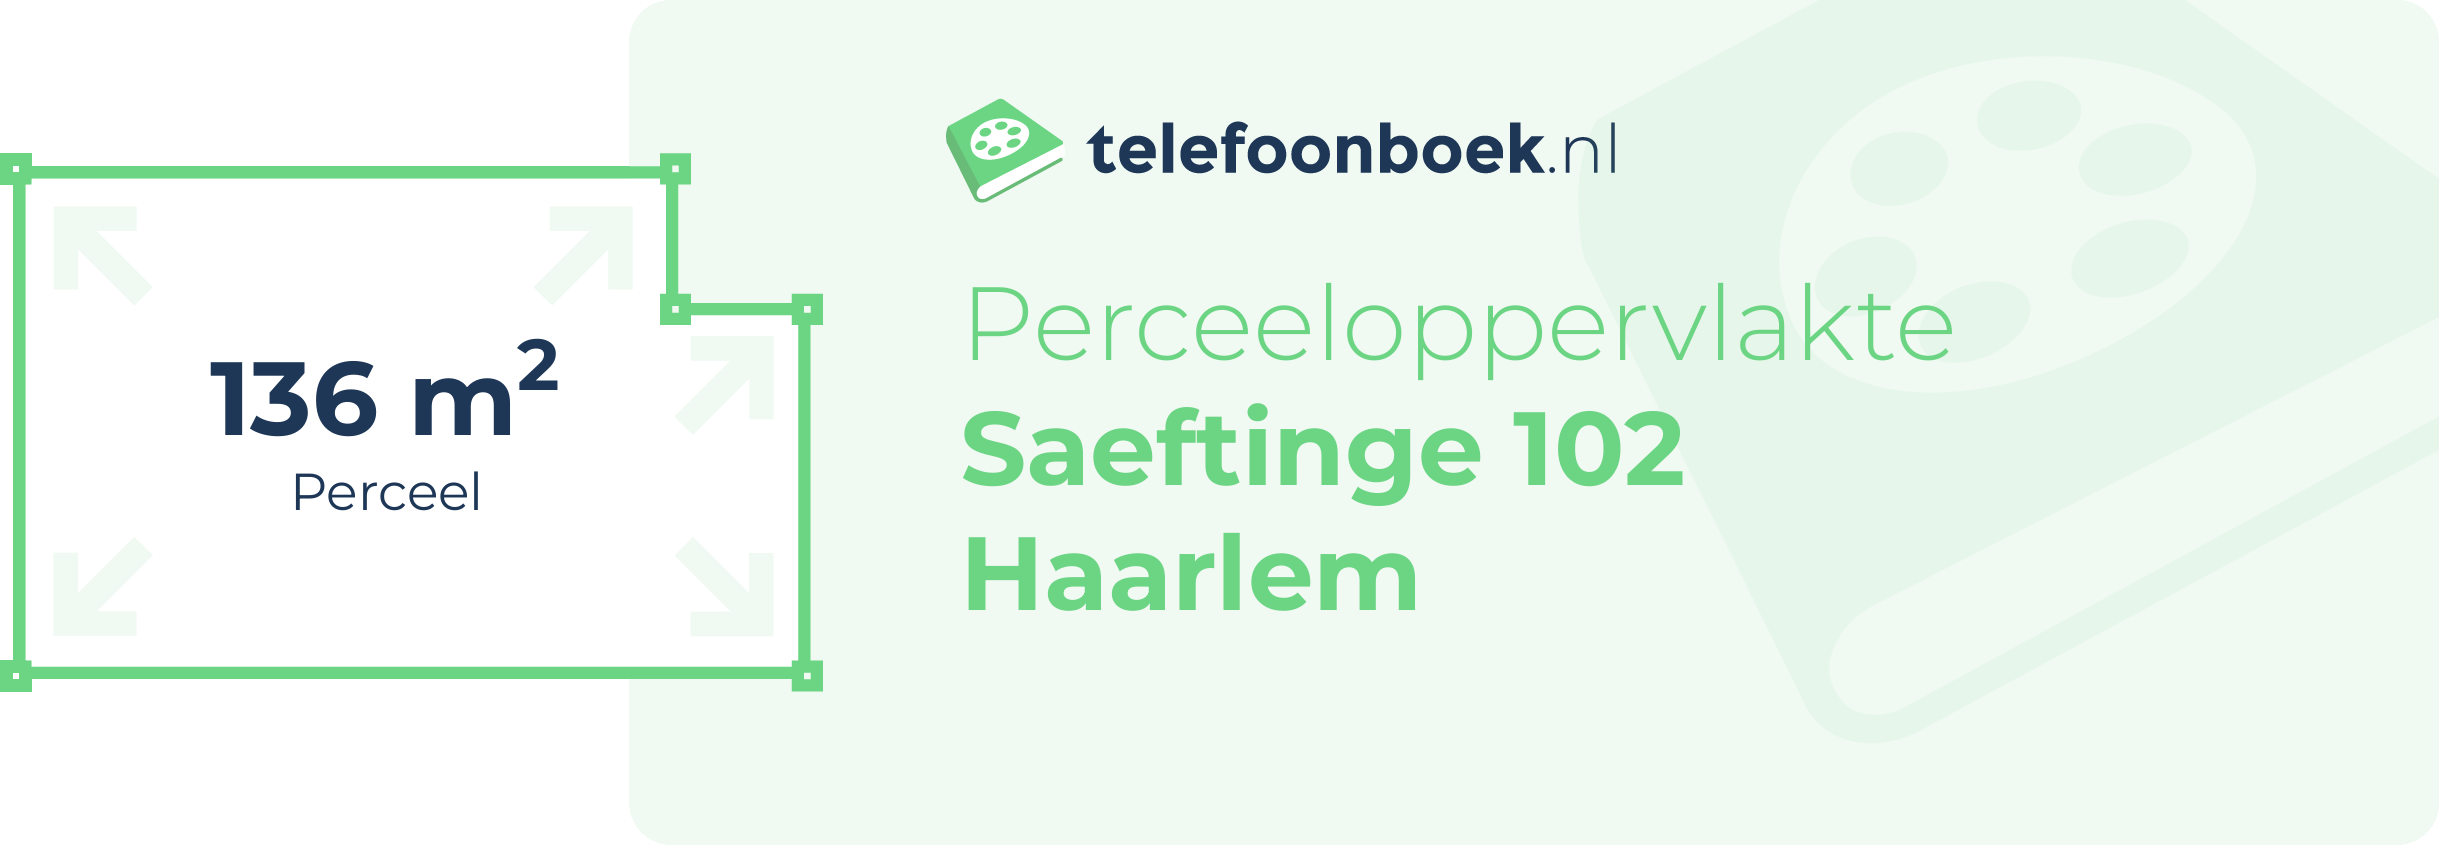 Perceeloppervlakte Saeftinge 102 Haarlem